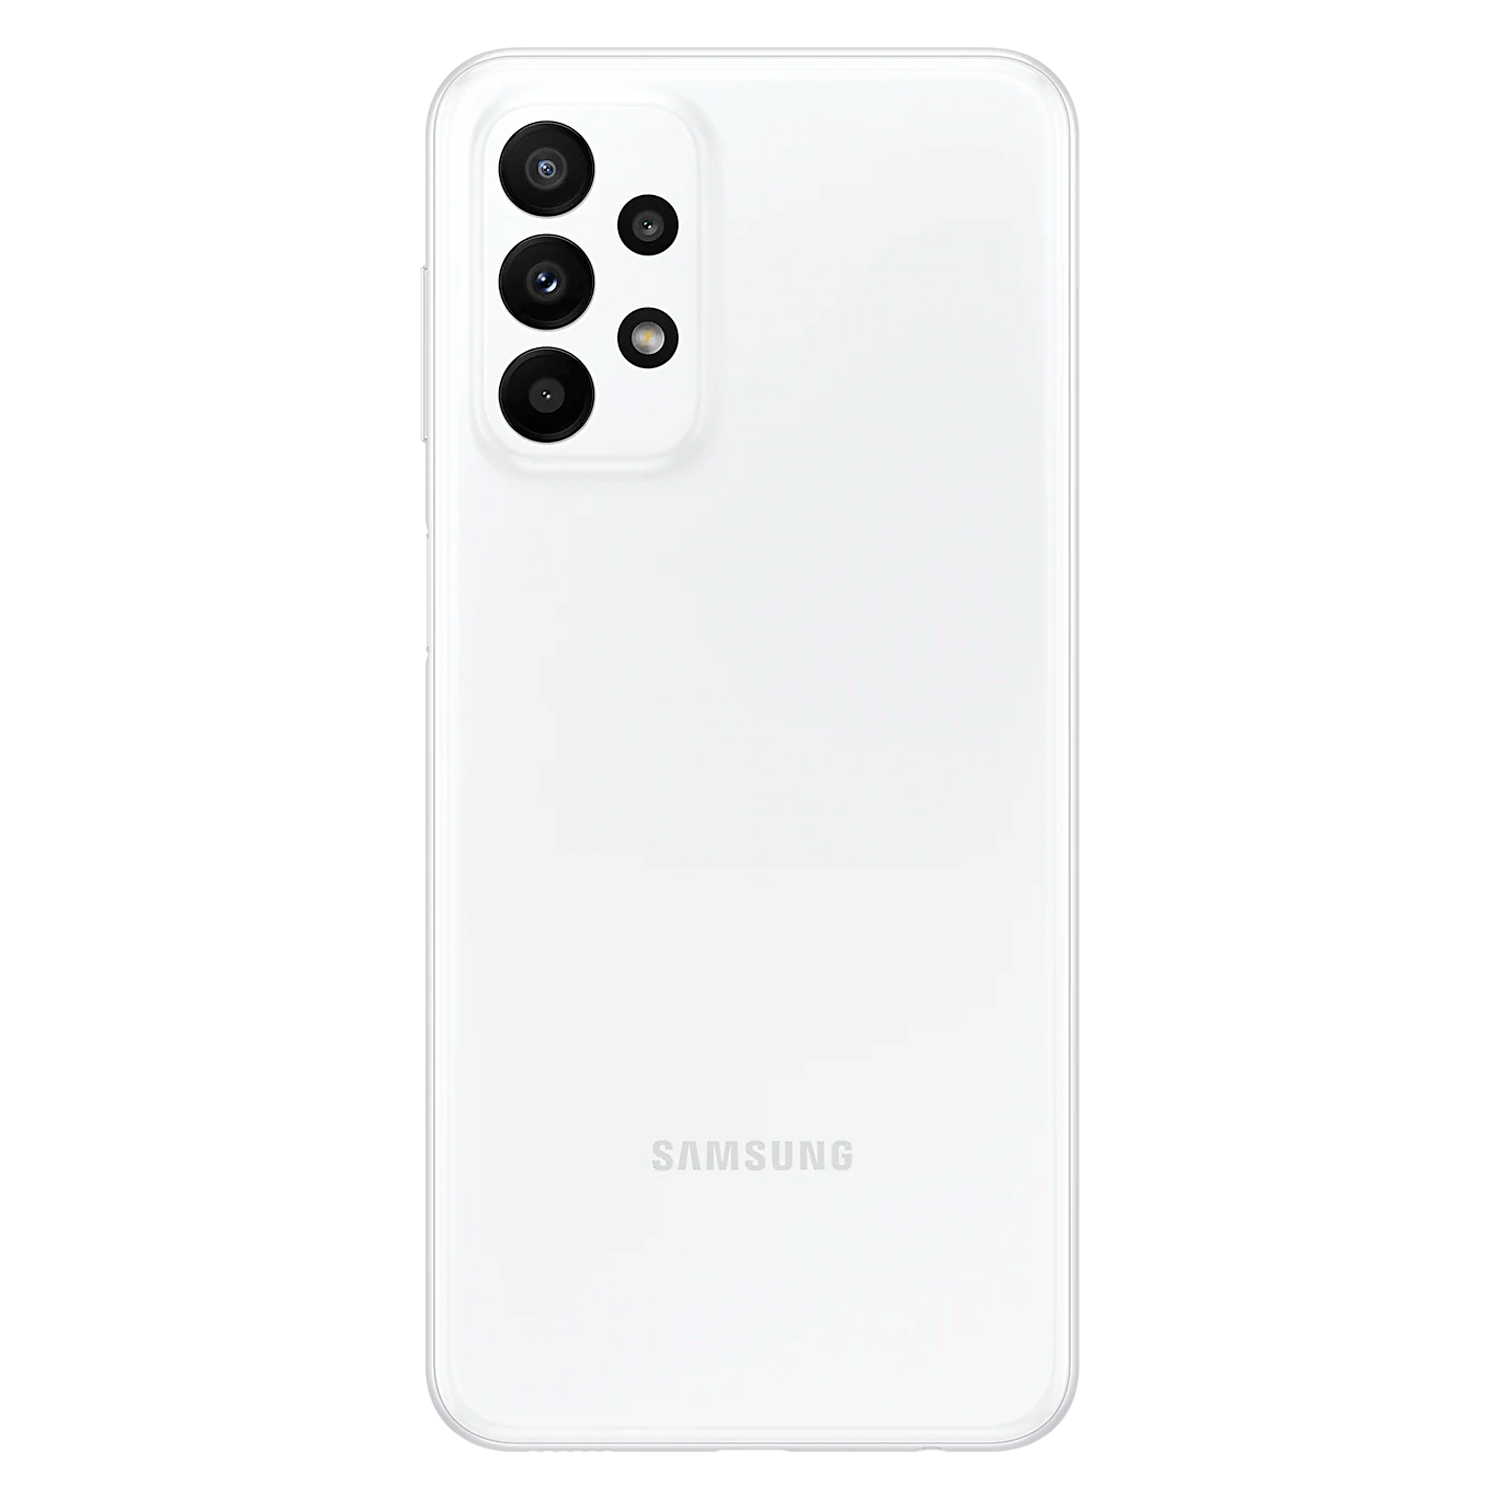 Smartphone Samsung Galaxy A23 5G 128gb Preto 4gb Ram - Galaxy A23